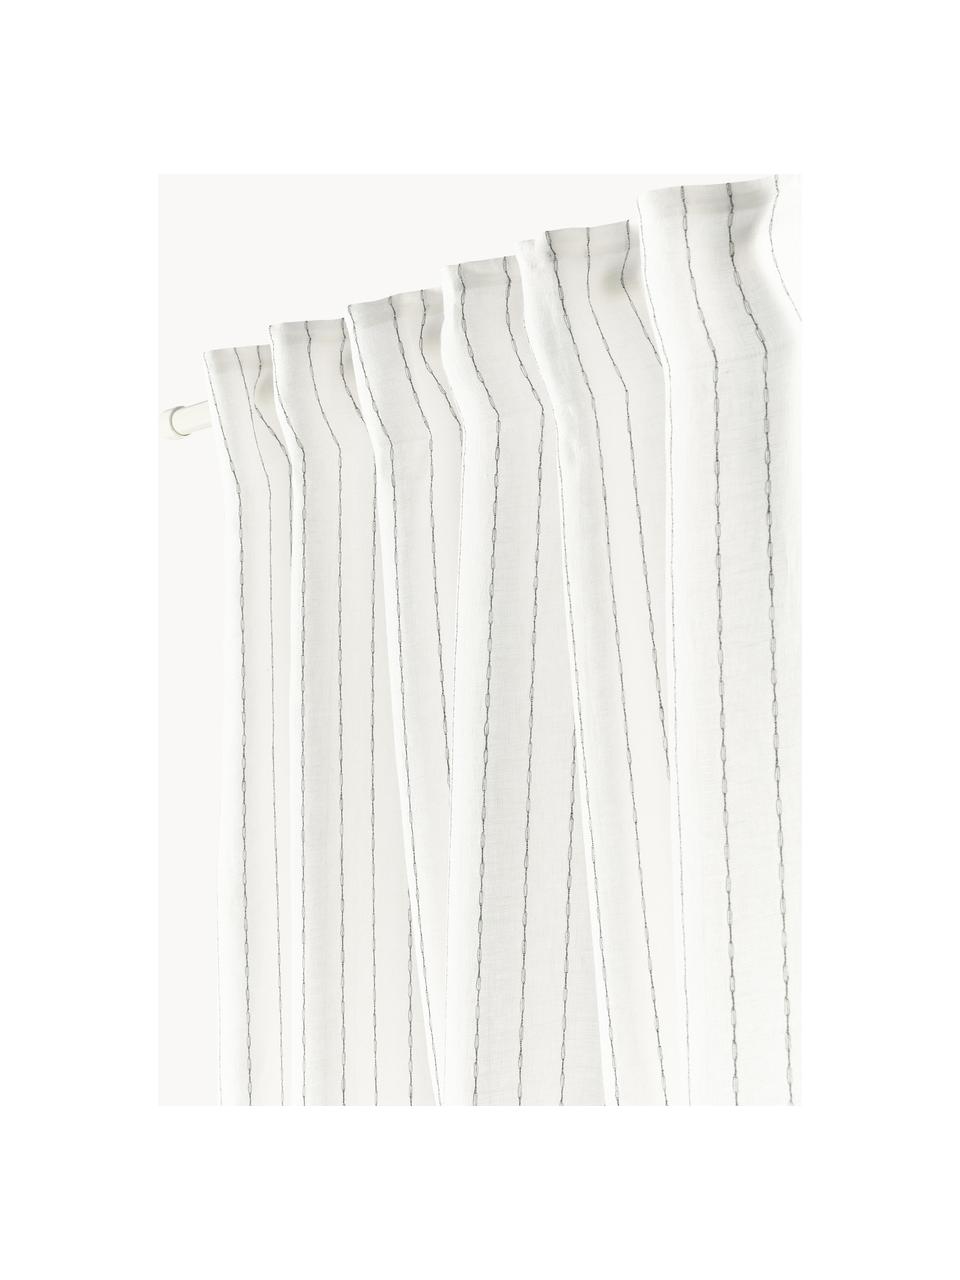 Halbtransparente Gardine Birch mit Multiband, 2 Stück, 100 % Leinen, Off-White, B 130 x L 260 cm